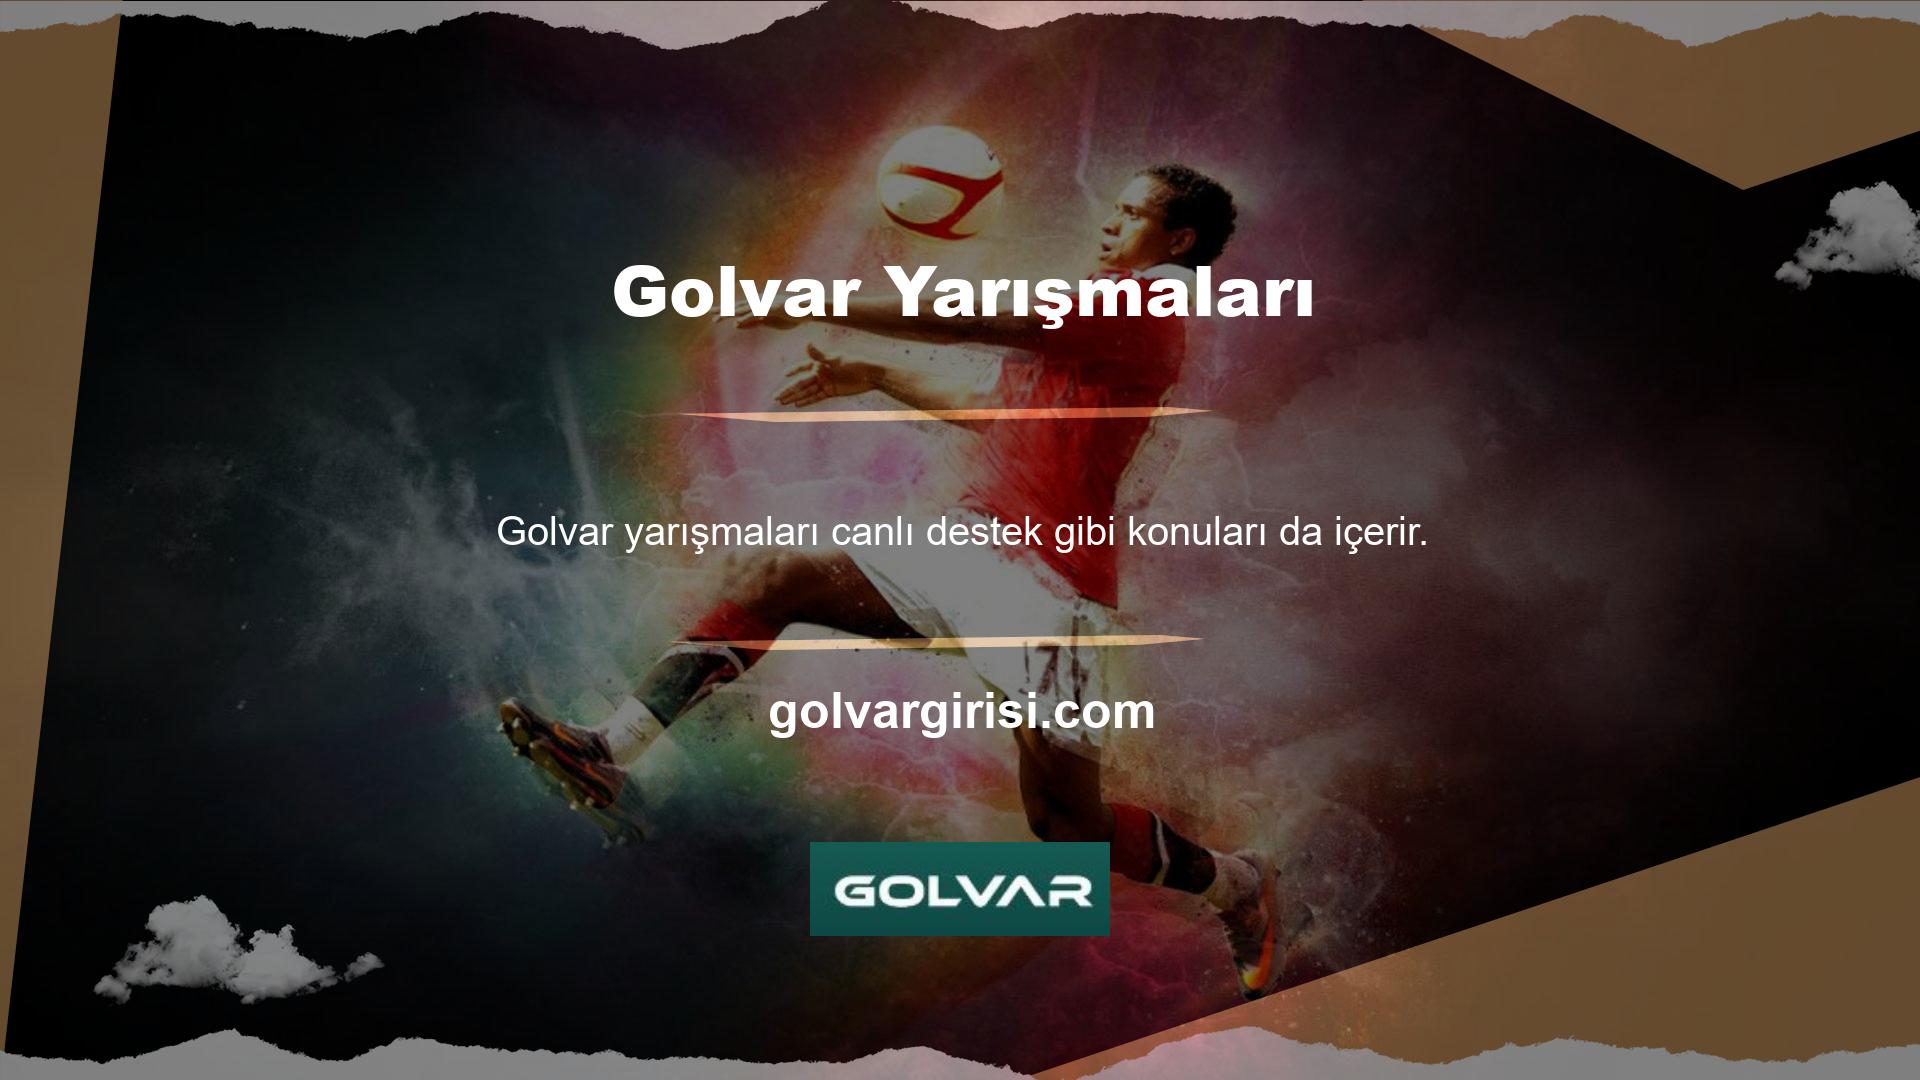 Sorularınız olması durumunda Golvar müşteri hizmetlerine ulaşarak yetkili personel ile gerçek zamanlı iletişime geçebilirsiniz